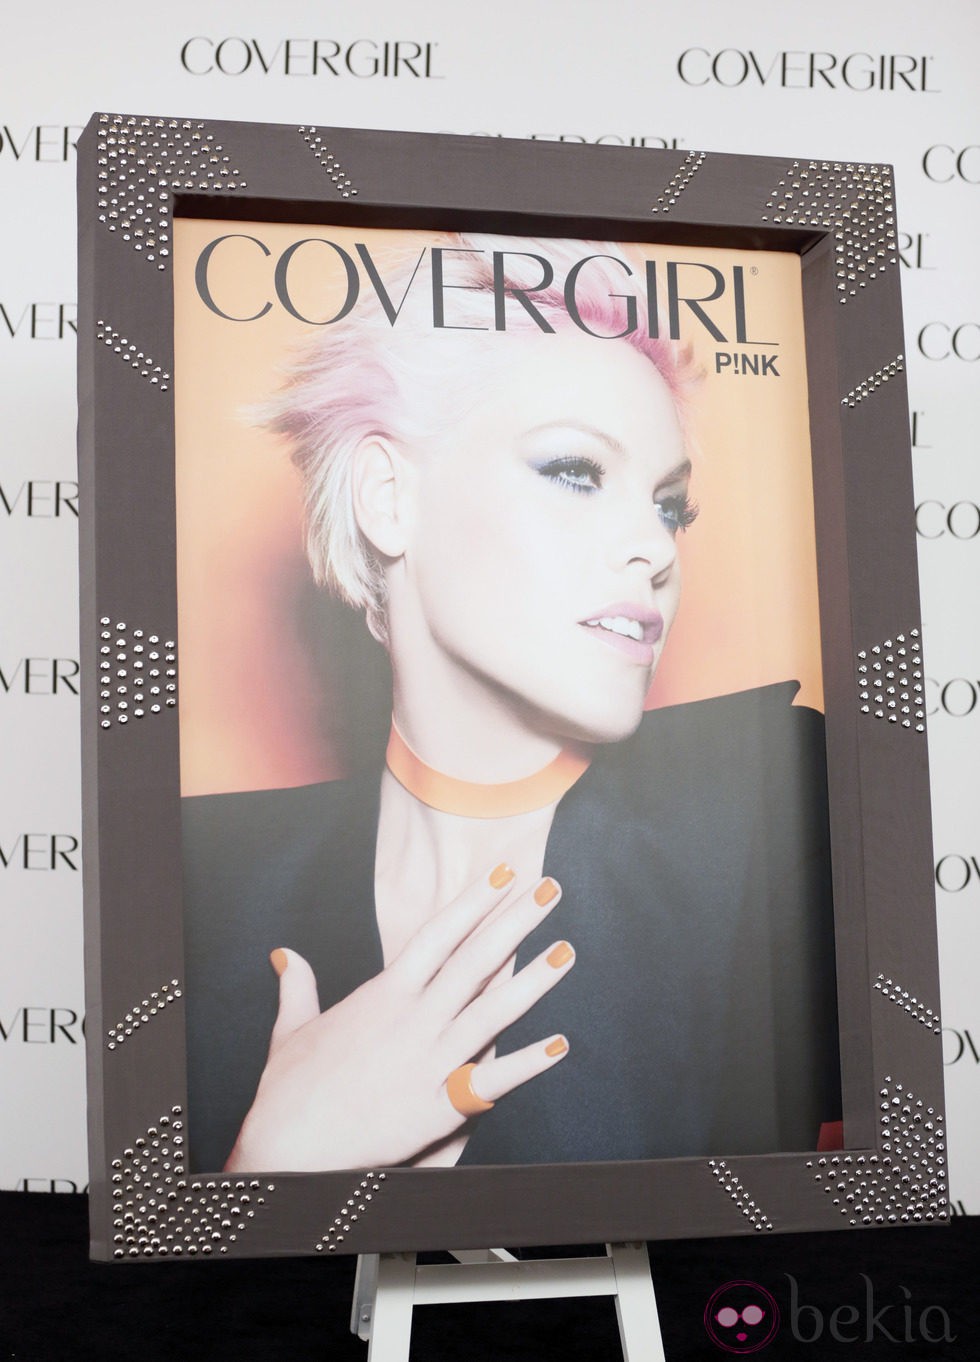 La cantante Pink en el cartel promocional de la firma de cosméticos 'Covergirl'